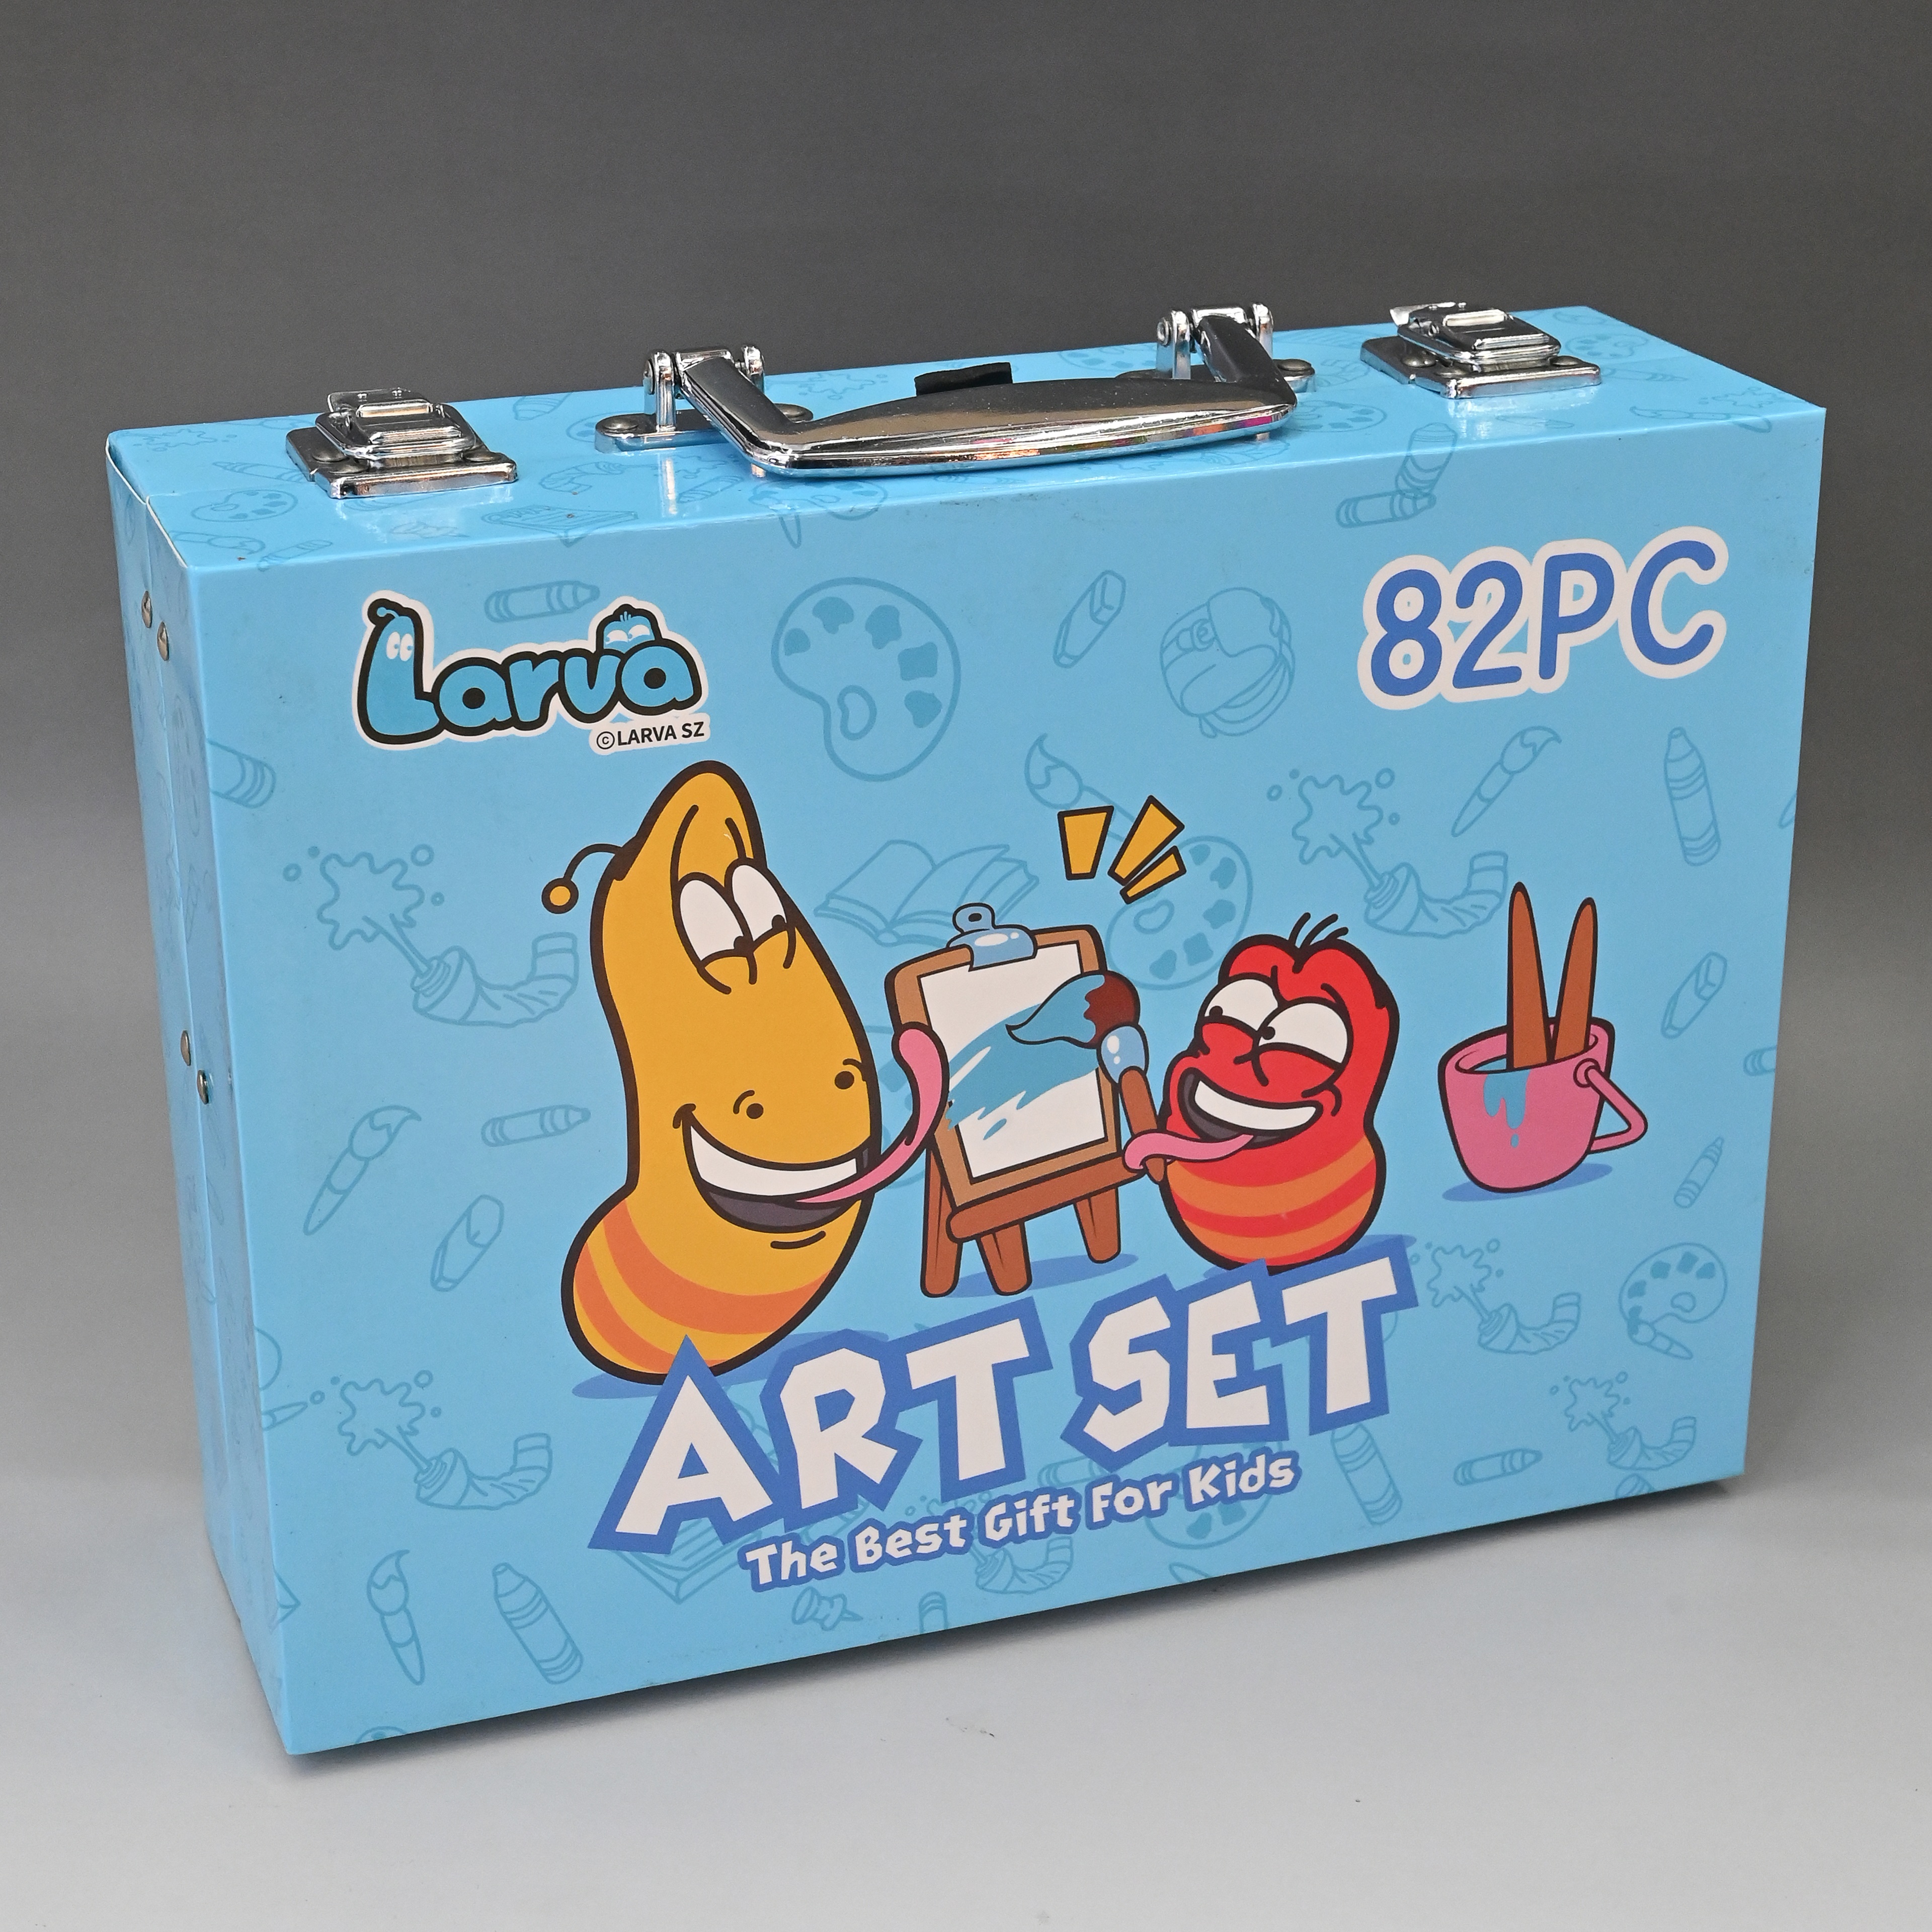 双层套盒爆笑虫子画笔套装颜料套装82PCS水彩画笔套装